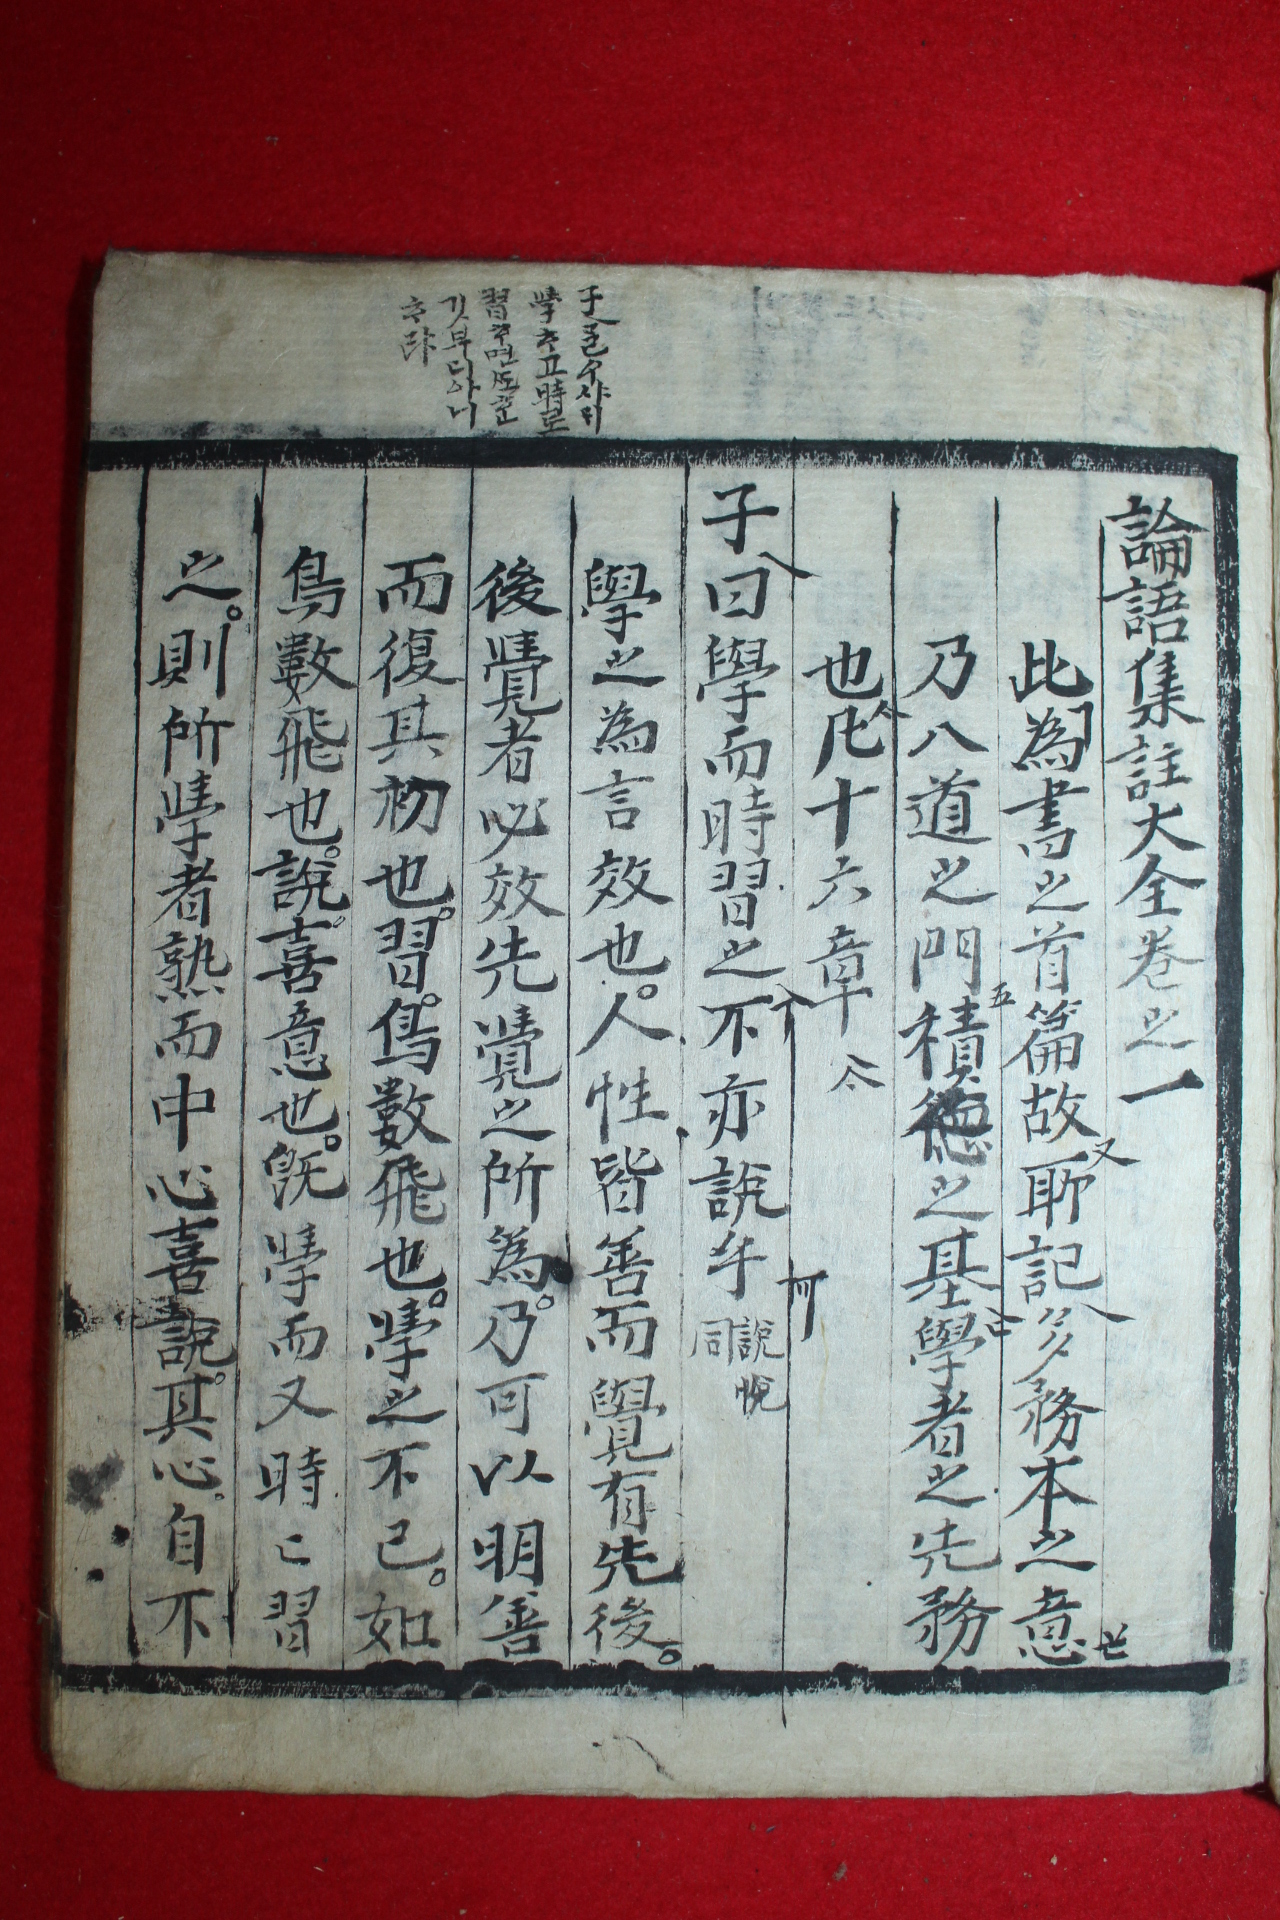 조선시대 필사본 언문현토가있는 논어(論語) 1책